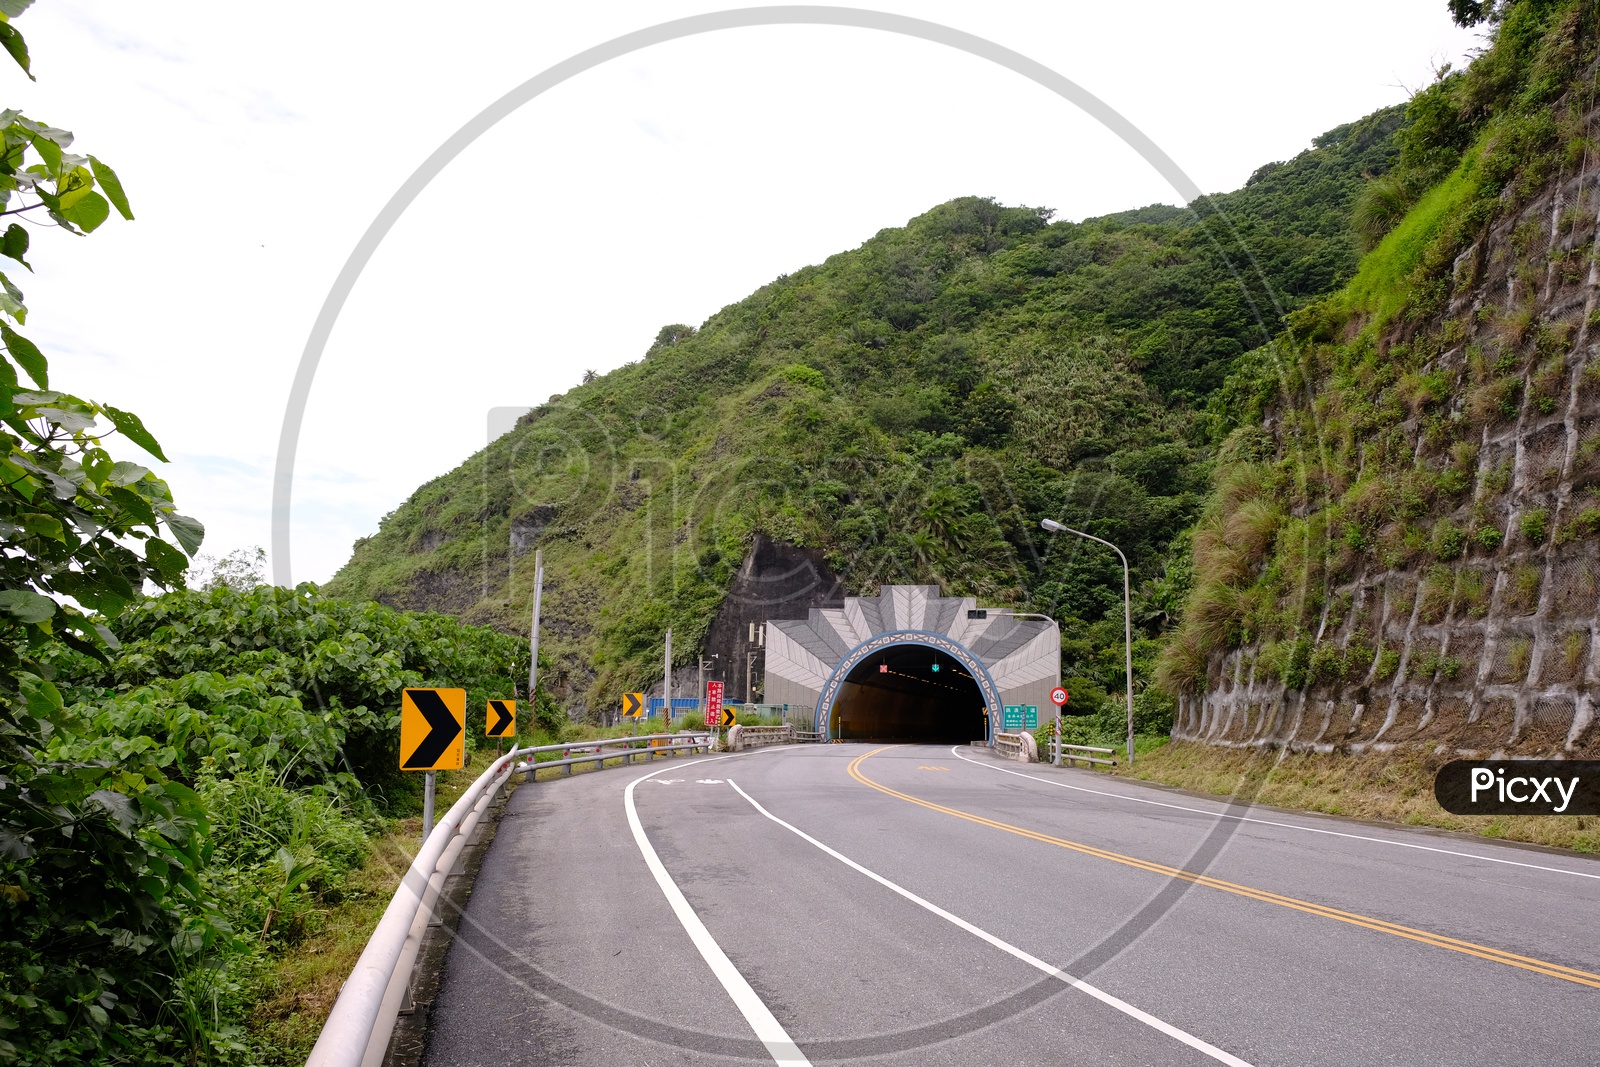 Tunnel through Mountains